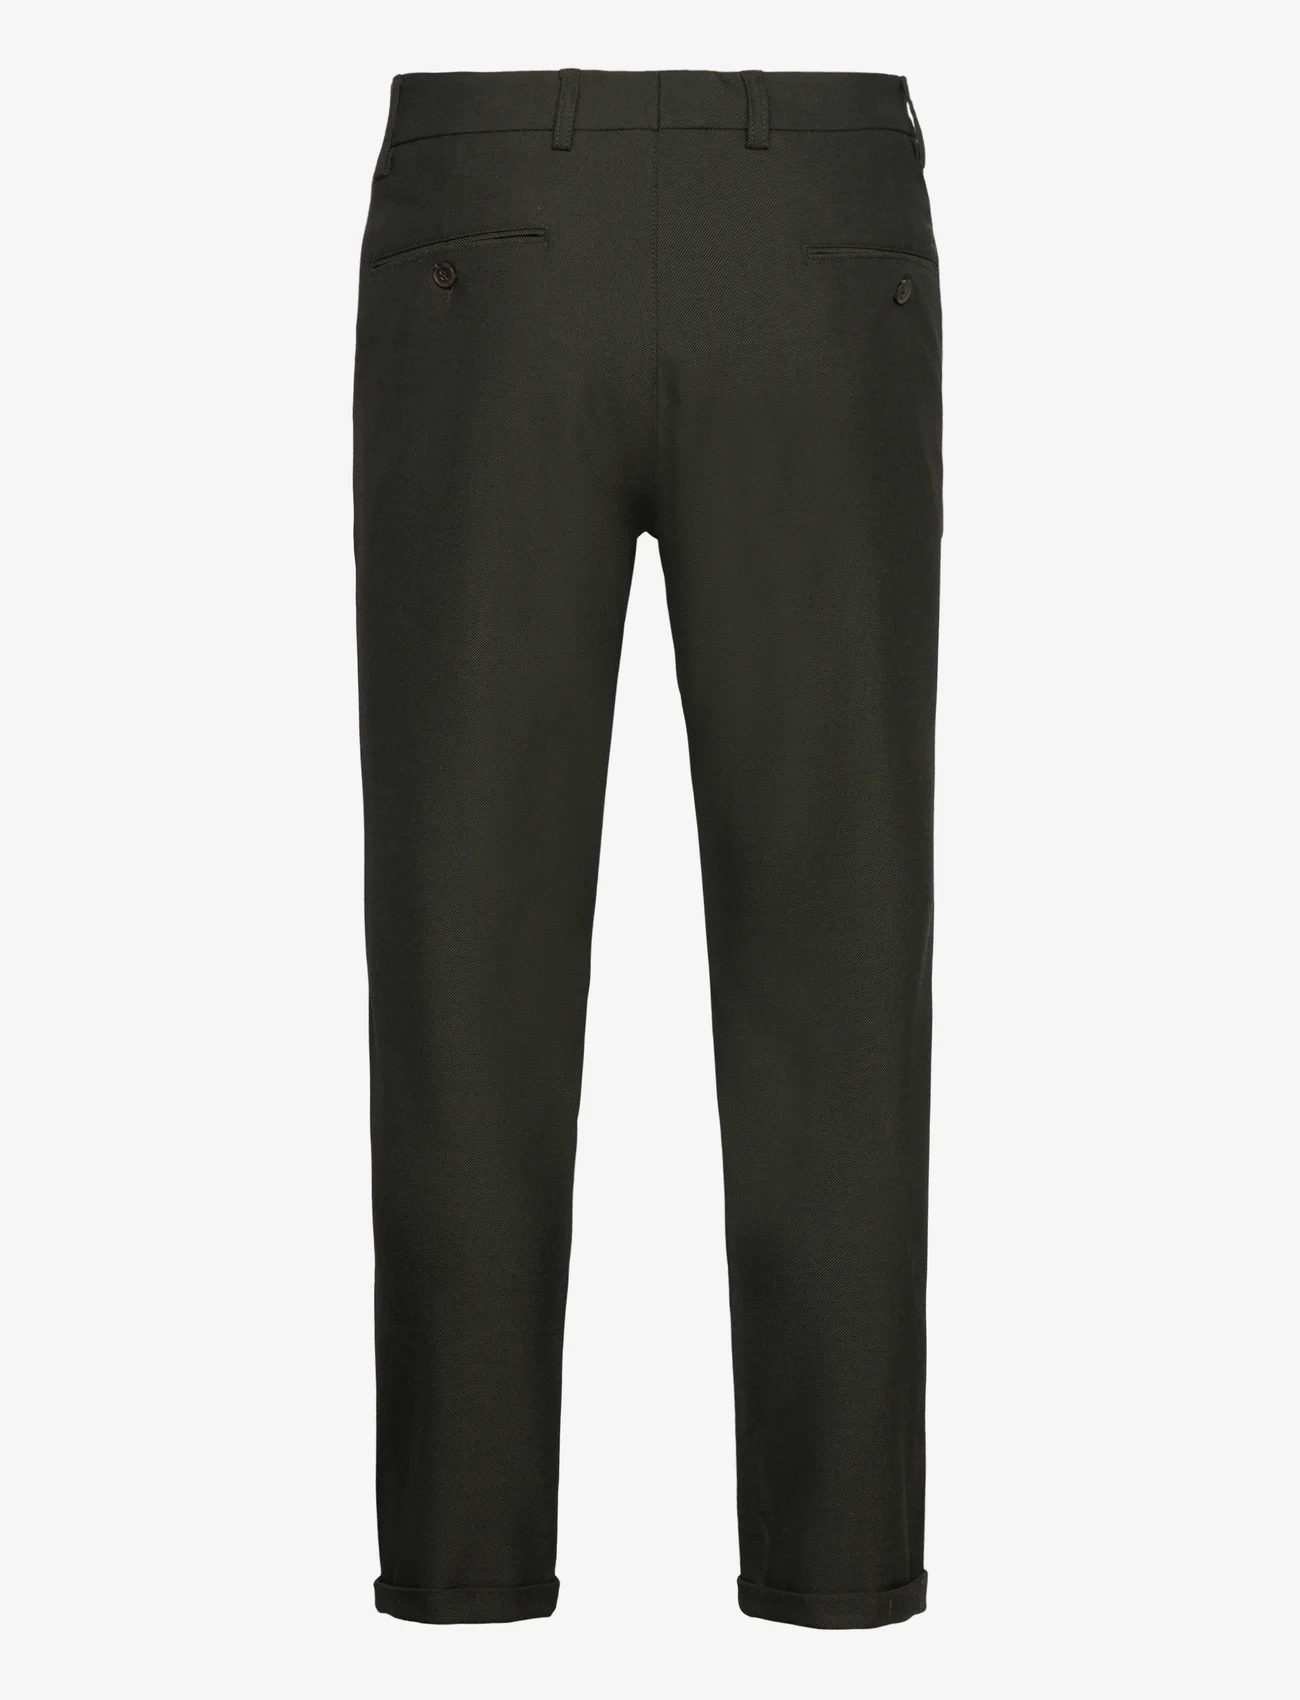 Les Deux - Como Suit Pants - Seasonal - nordic style - deep forest/charcoal - 1